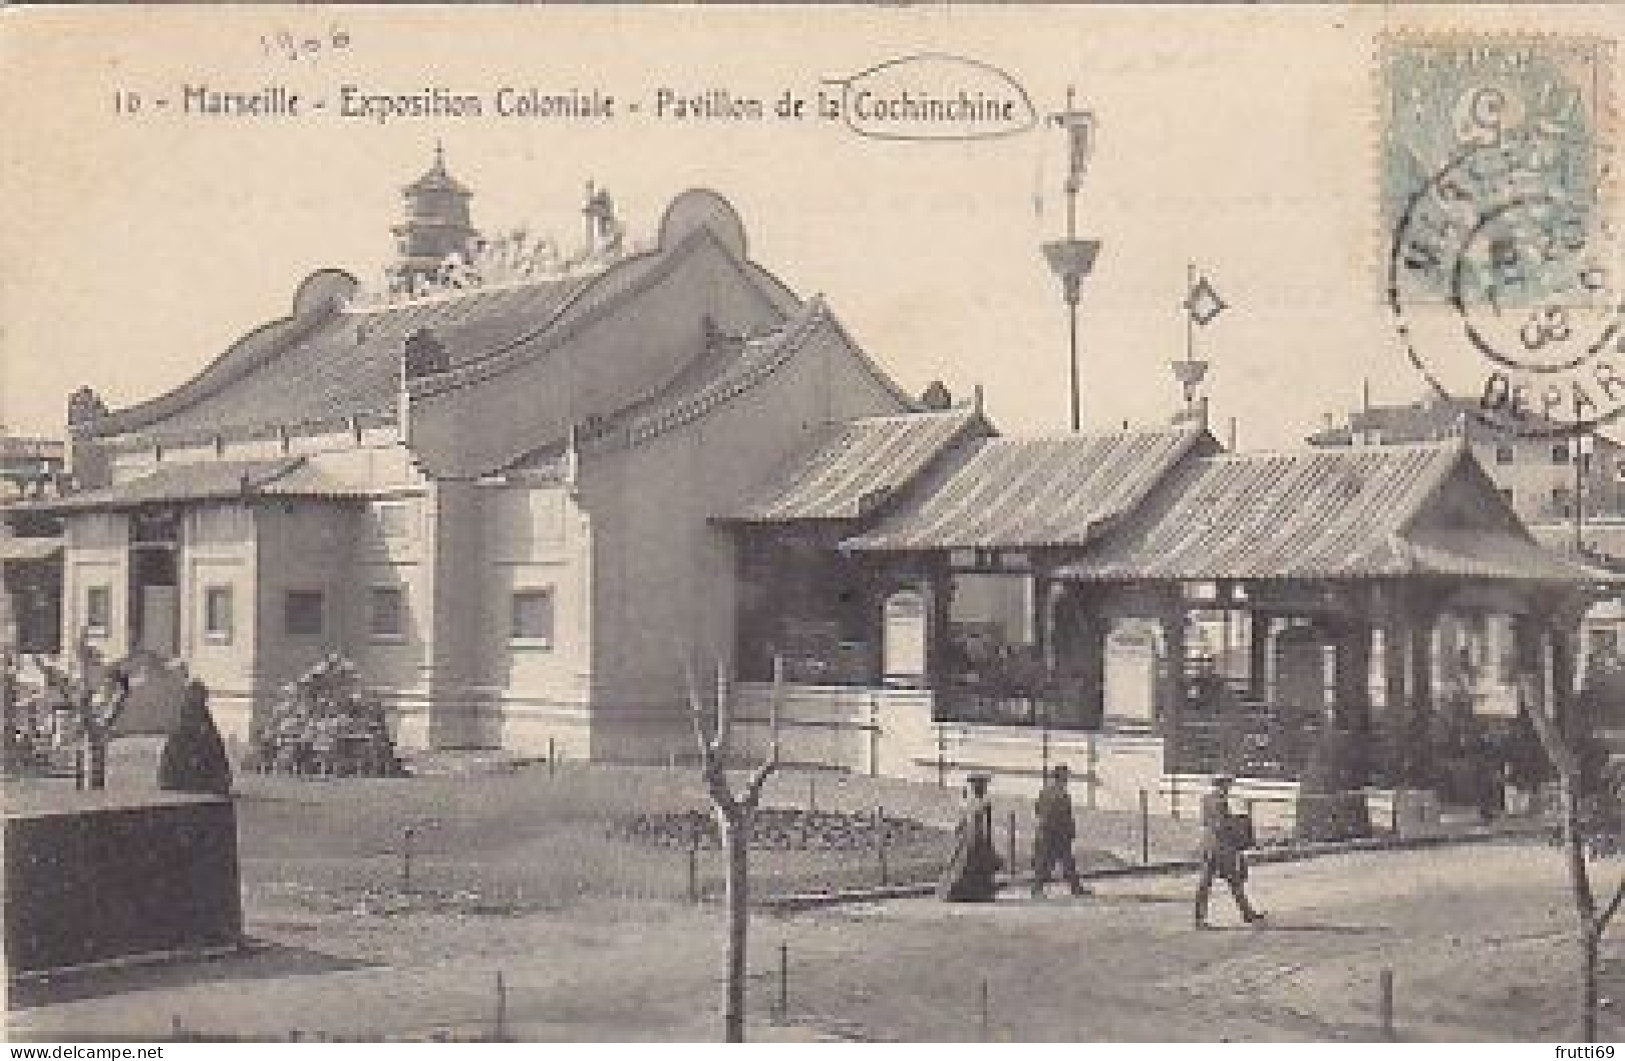 AK 216699 FRANCE - Marseille - Expoition Coloniale - Pavilion De Ls Cochinchine - Exposiciones Coloniales 1906 - 1922